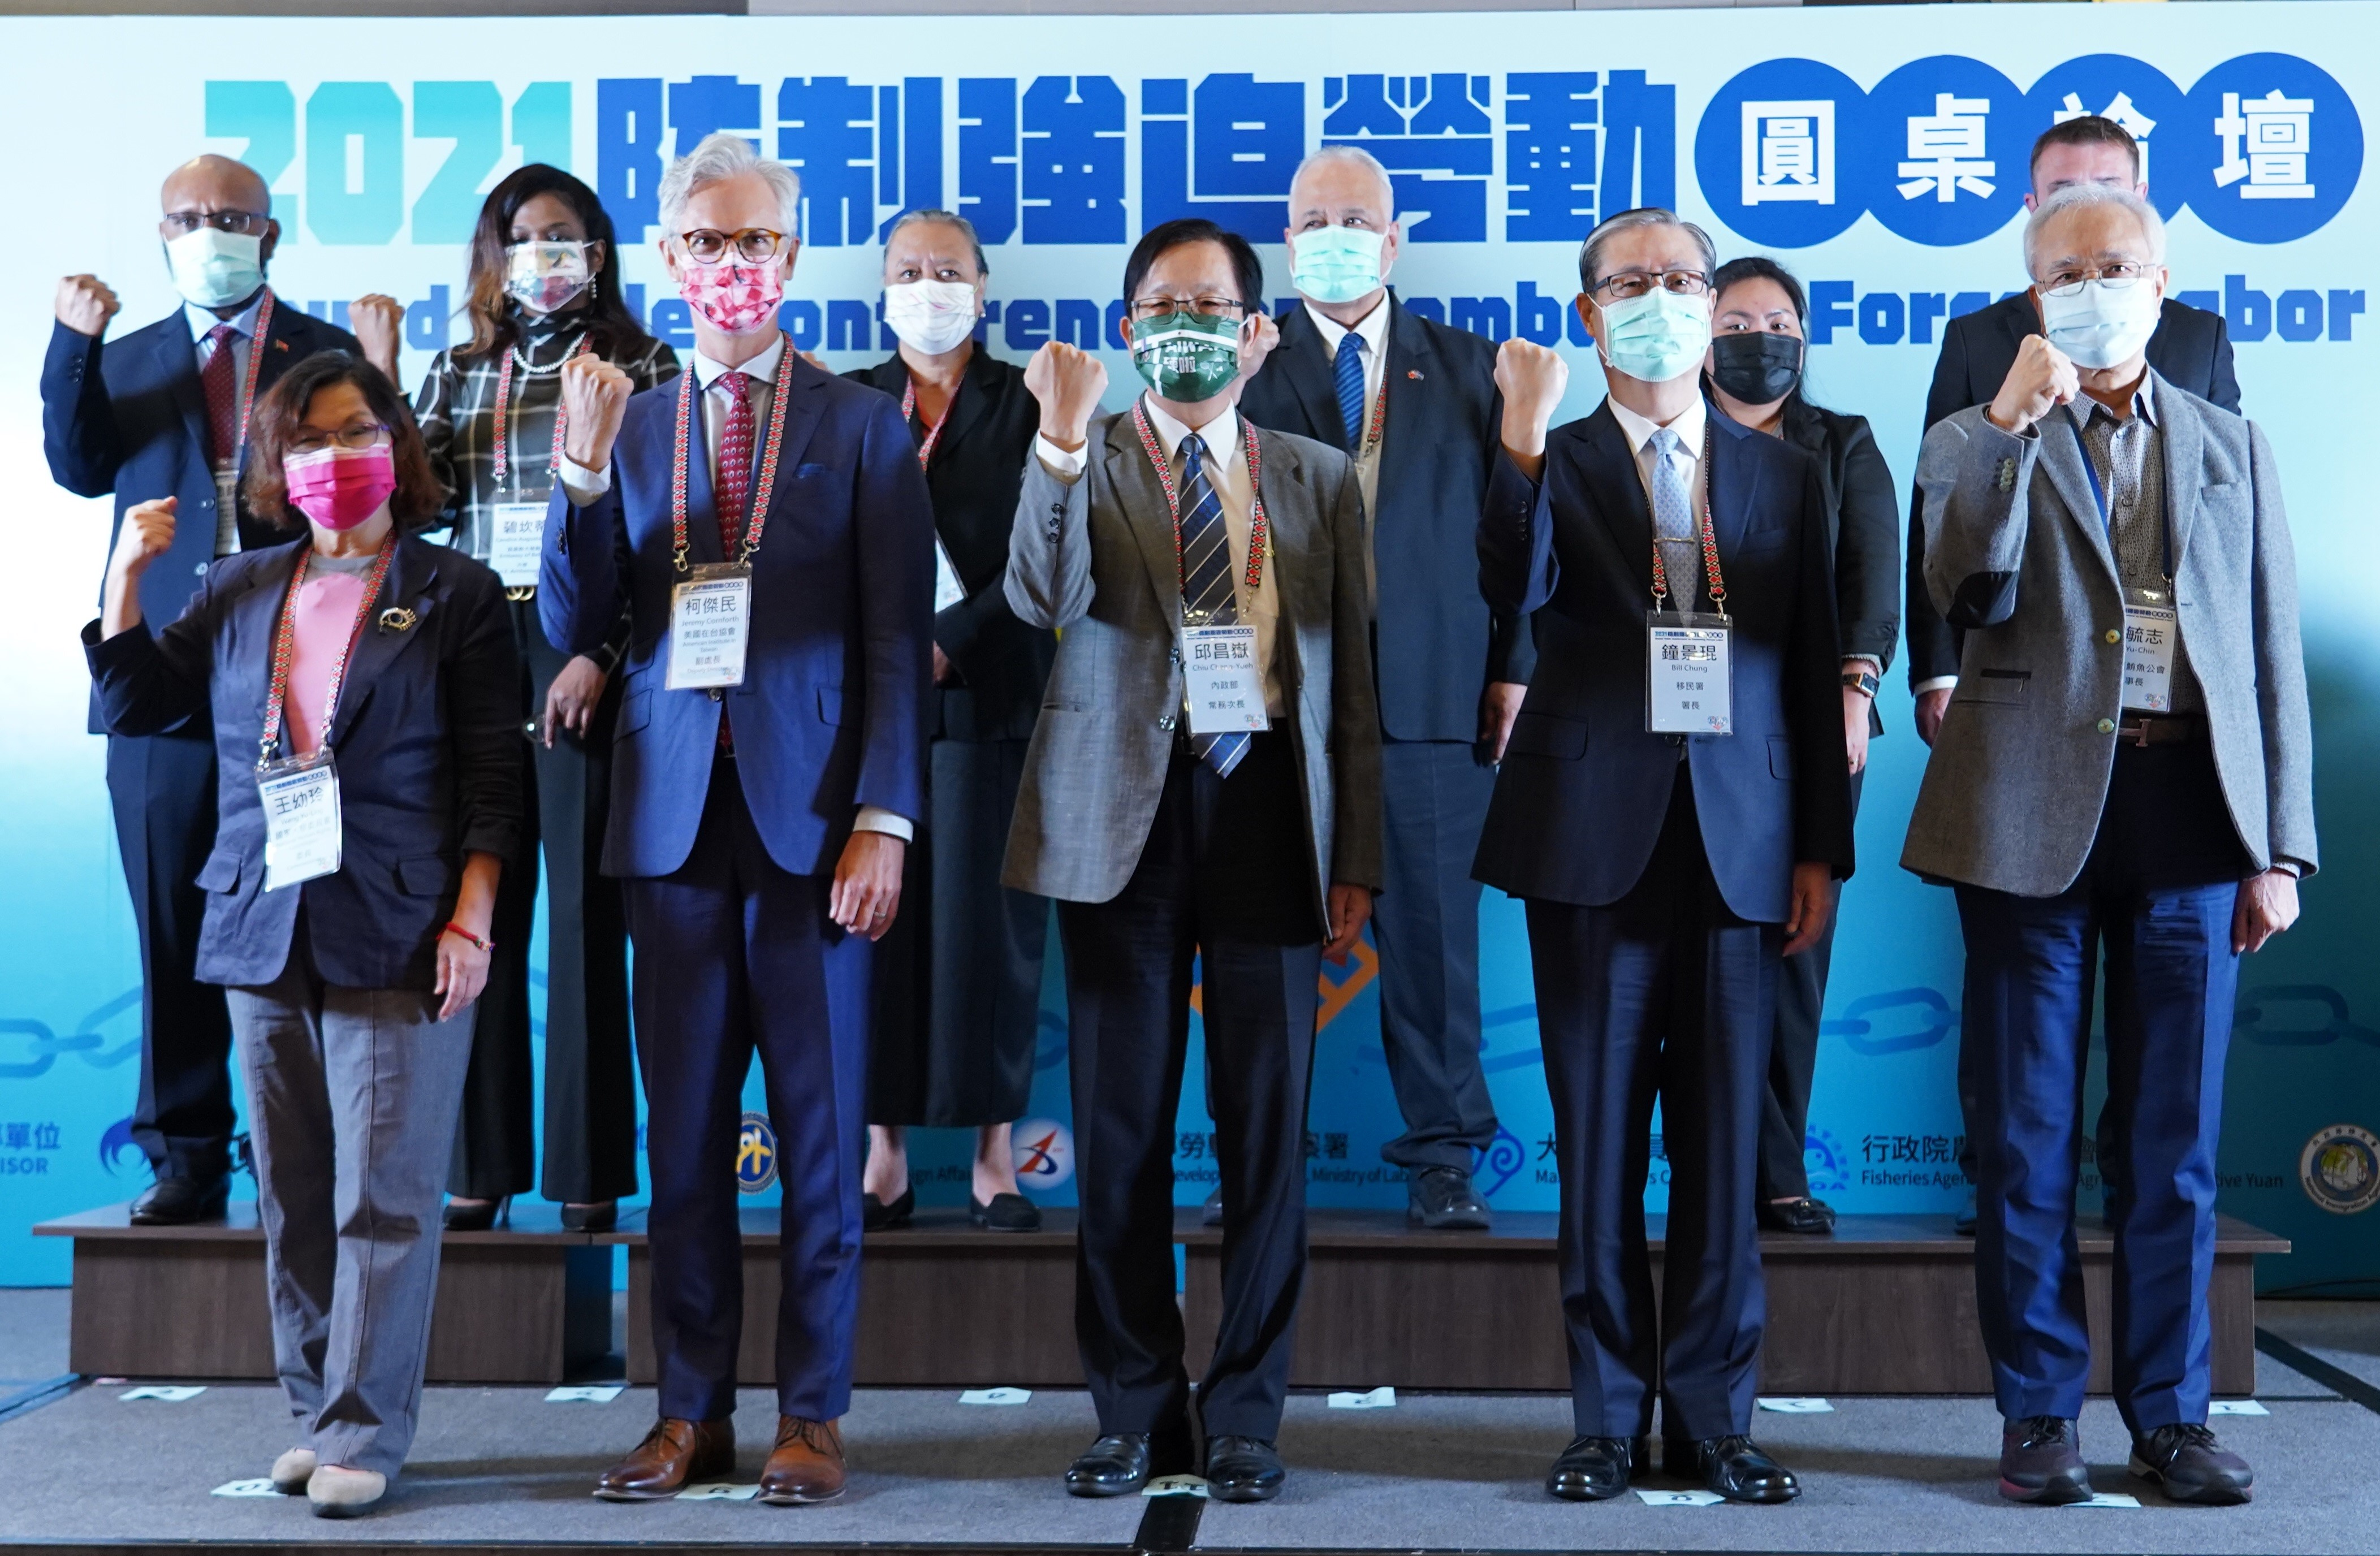 Quan chức các nước tại Đài Loan, đại diện các cơ quan chính phủ, đoàn thể tư nhân và nhiều hiệp hội ngành nghề tham dự diễn đàn cùng thảo luận về vấn đề quyền lao động của thuyền viên trên biển và ngăn chặn lao động cưỡng bức. (Nguồn ảnh: Sở Di dân Đài Loan)